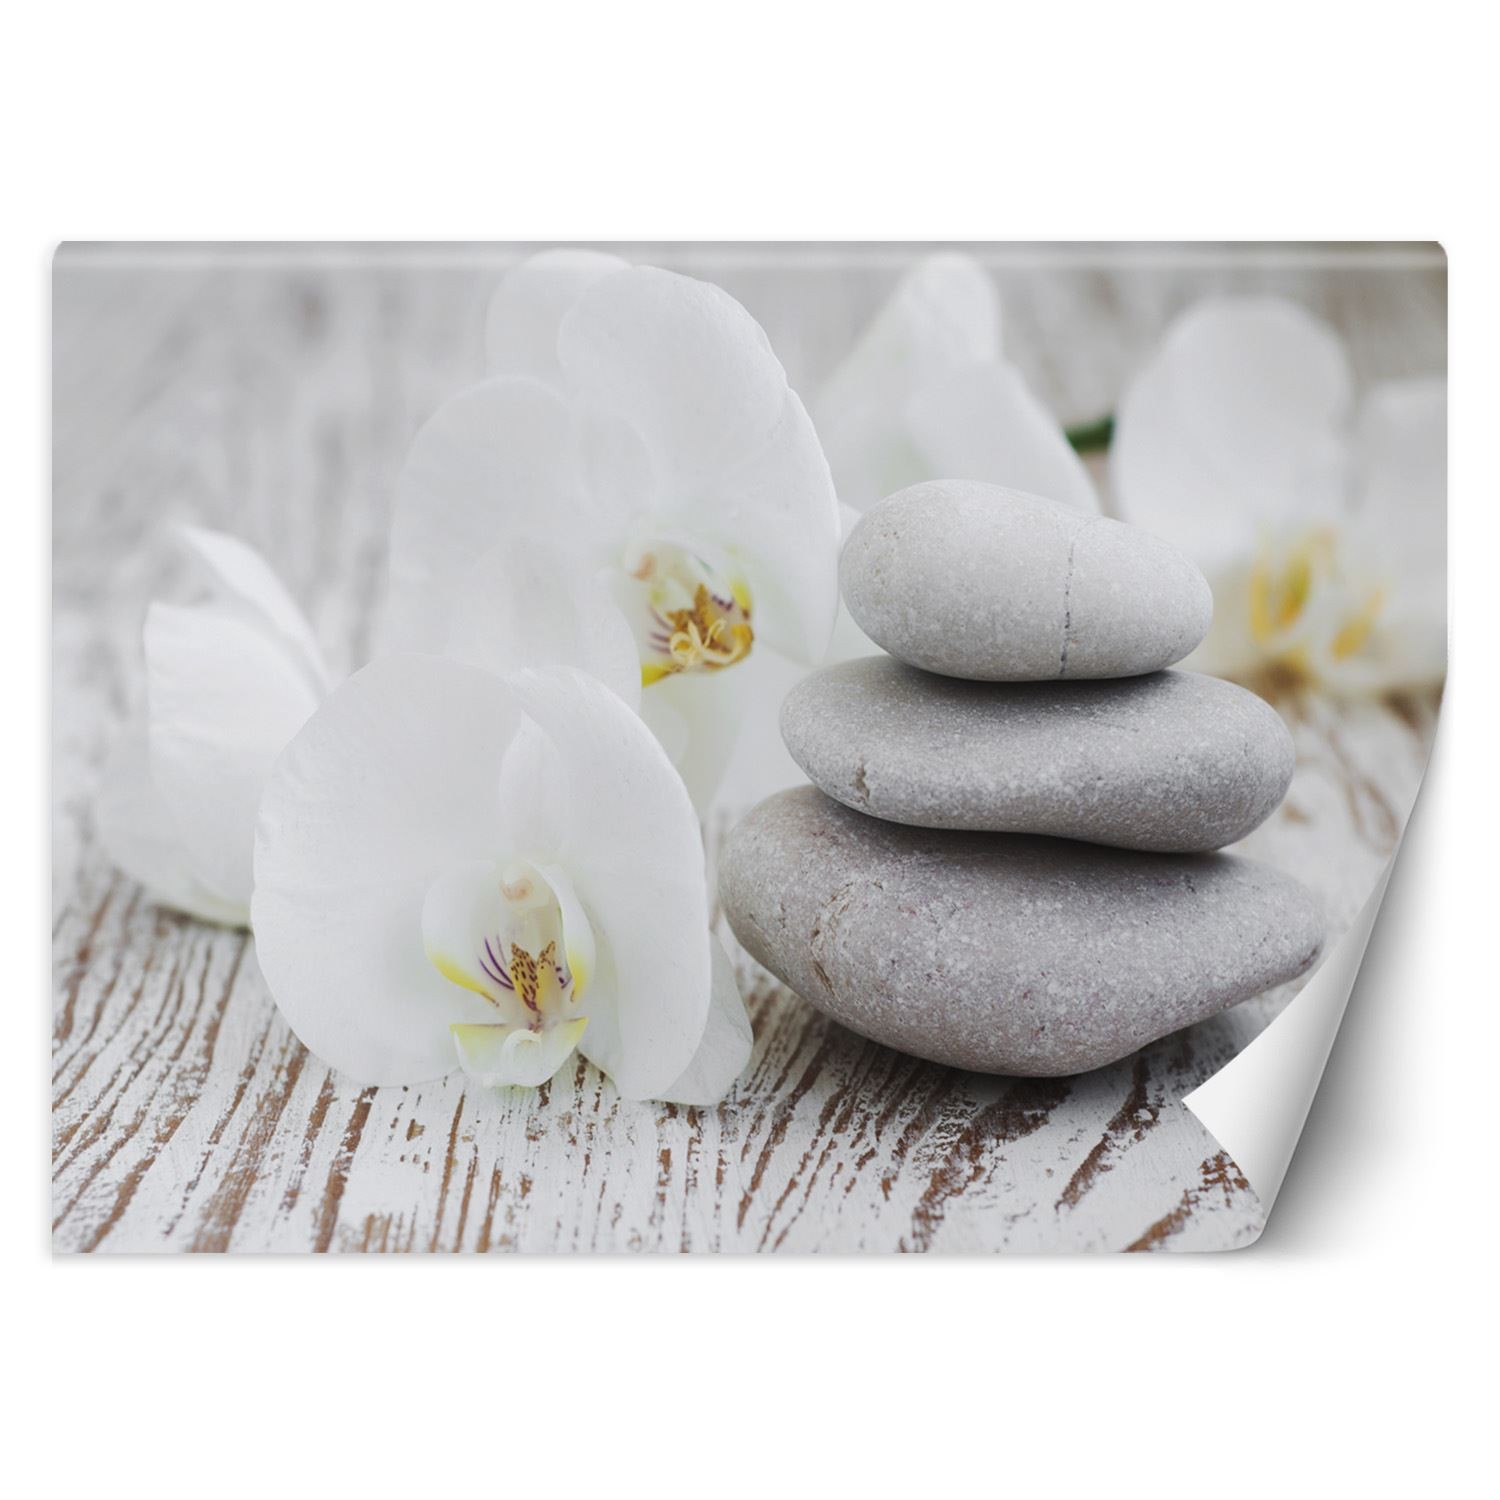 Trend24 – Behang – Flowers & Zen Stones – Vliesbehang – Fotobehang – Behang Woonkamer – 400x280x2 cm – Incl. behanglijm